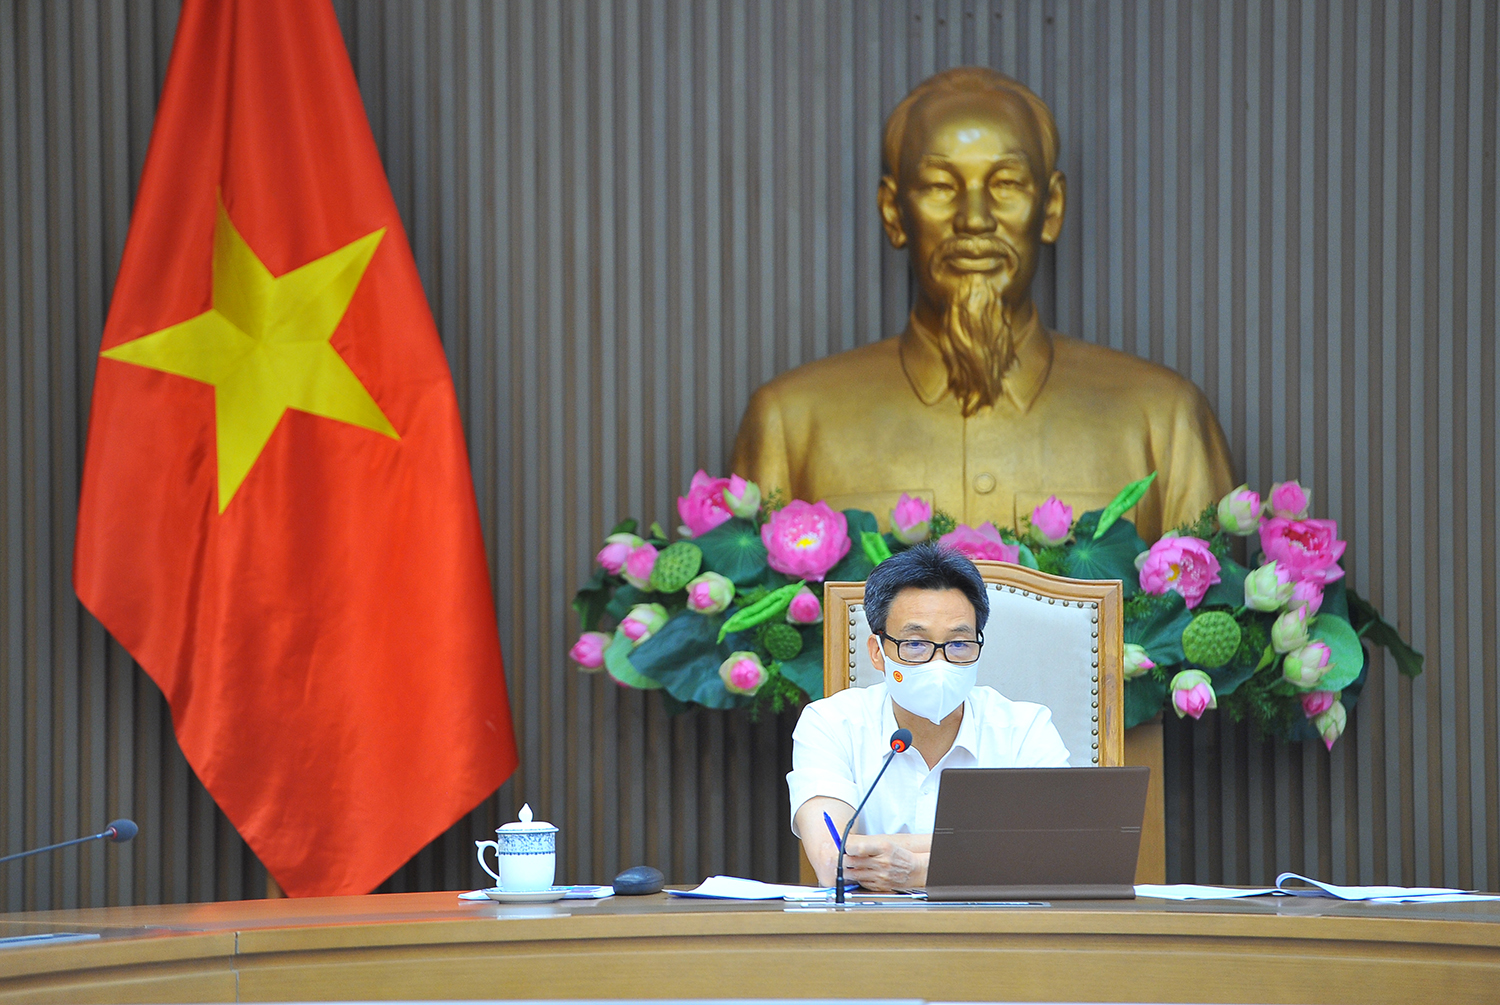 Phó Thủ tướng Vũ Đức Đam yêu cầu tỉnh Bắc Ninh làm rõ nguyên nhân tình trạng đó đây trong khu cách ly, phong toả không thực hiện nghiêm các quy định giãn cách xã hội. 